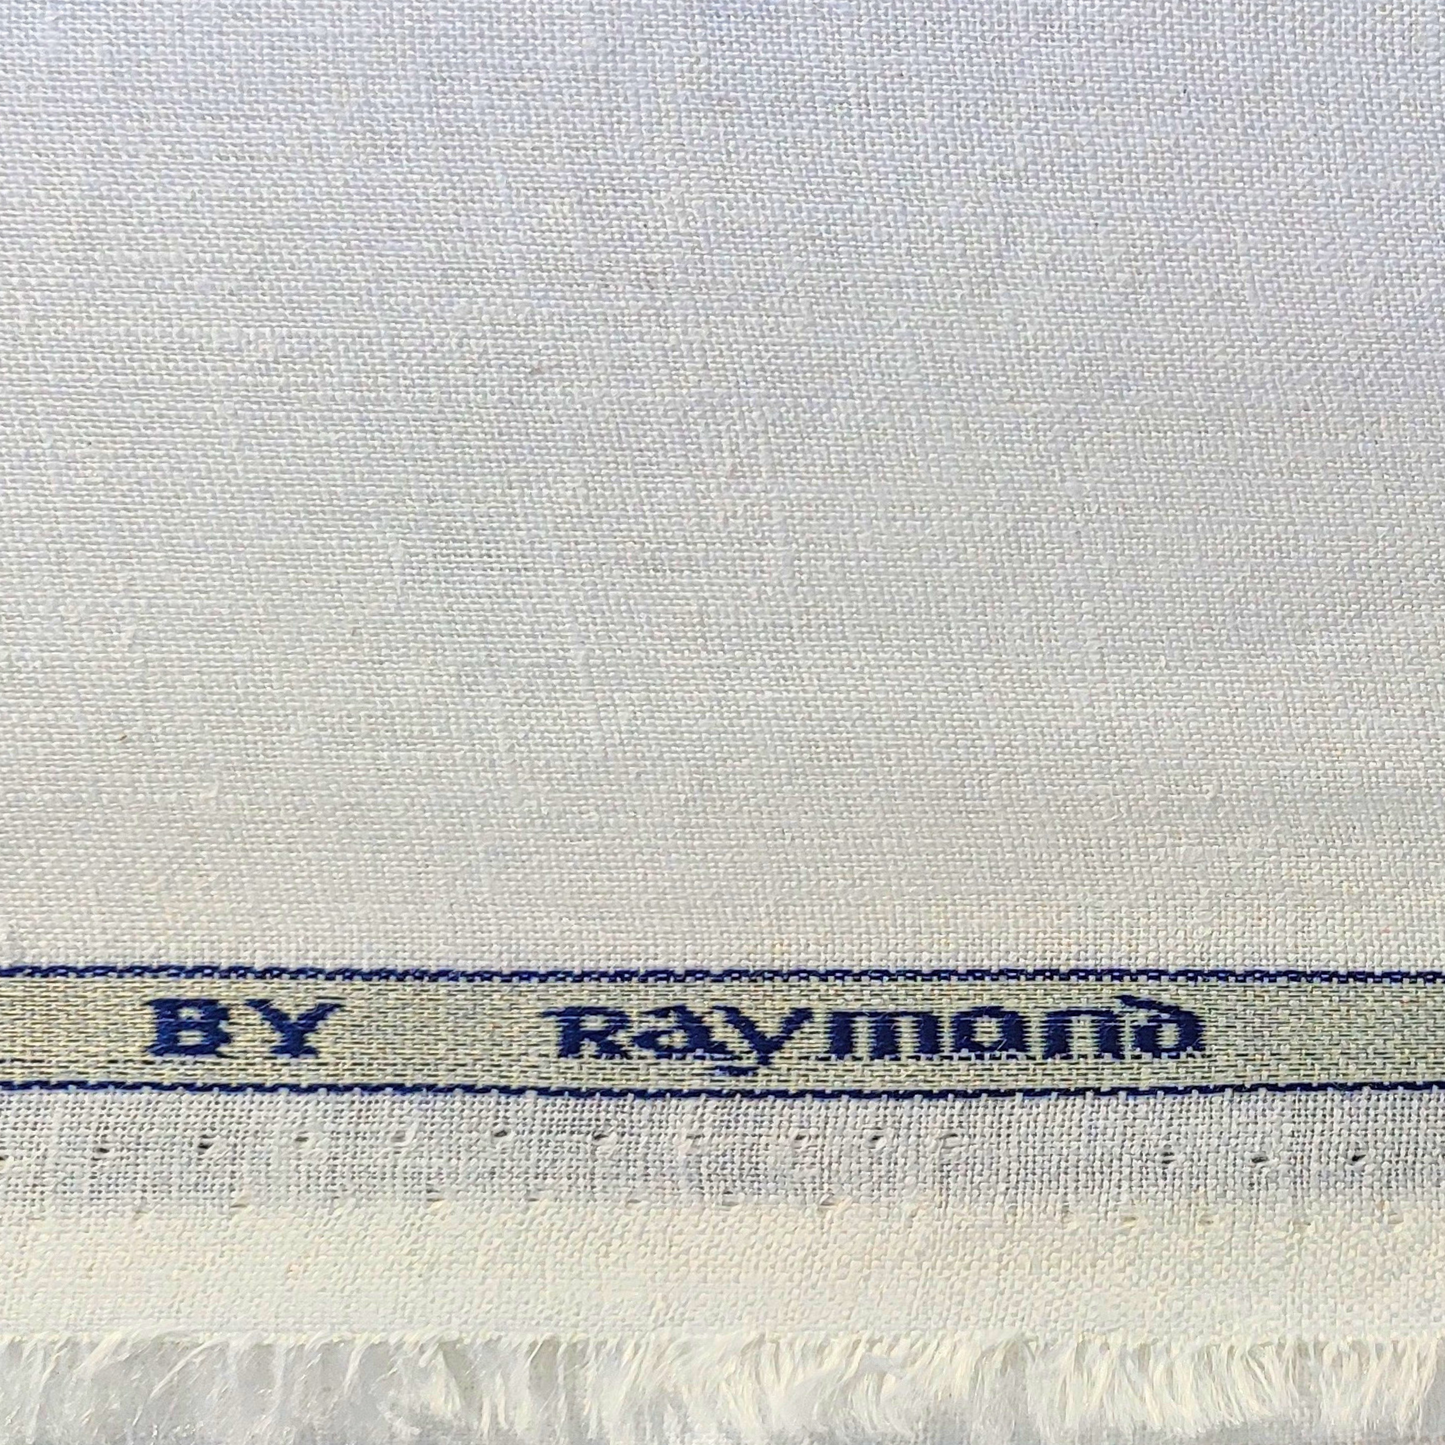 Raymond Unstitched Shirt Fabric